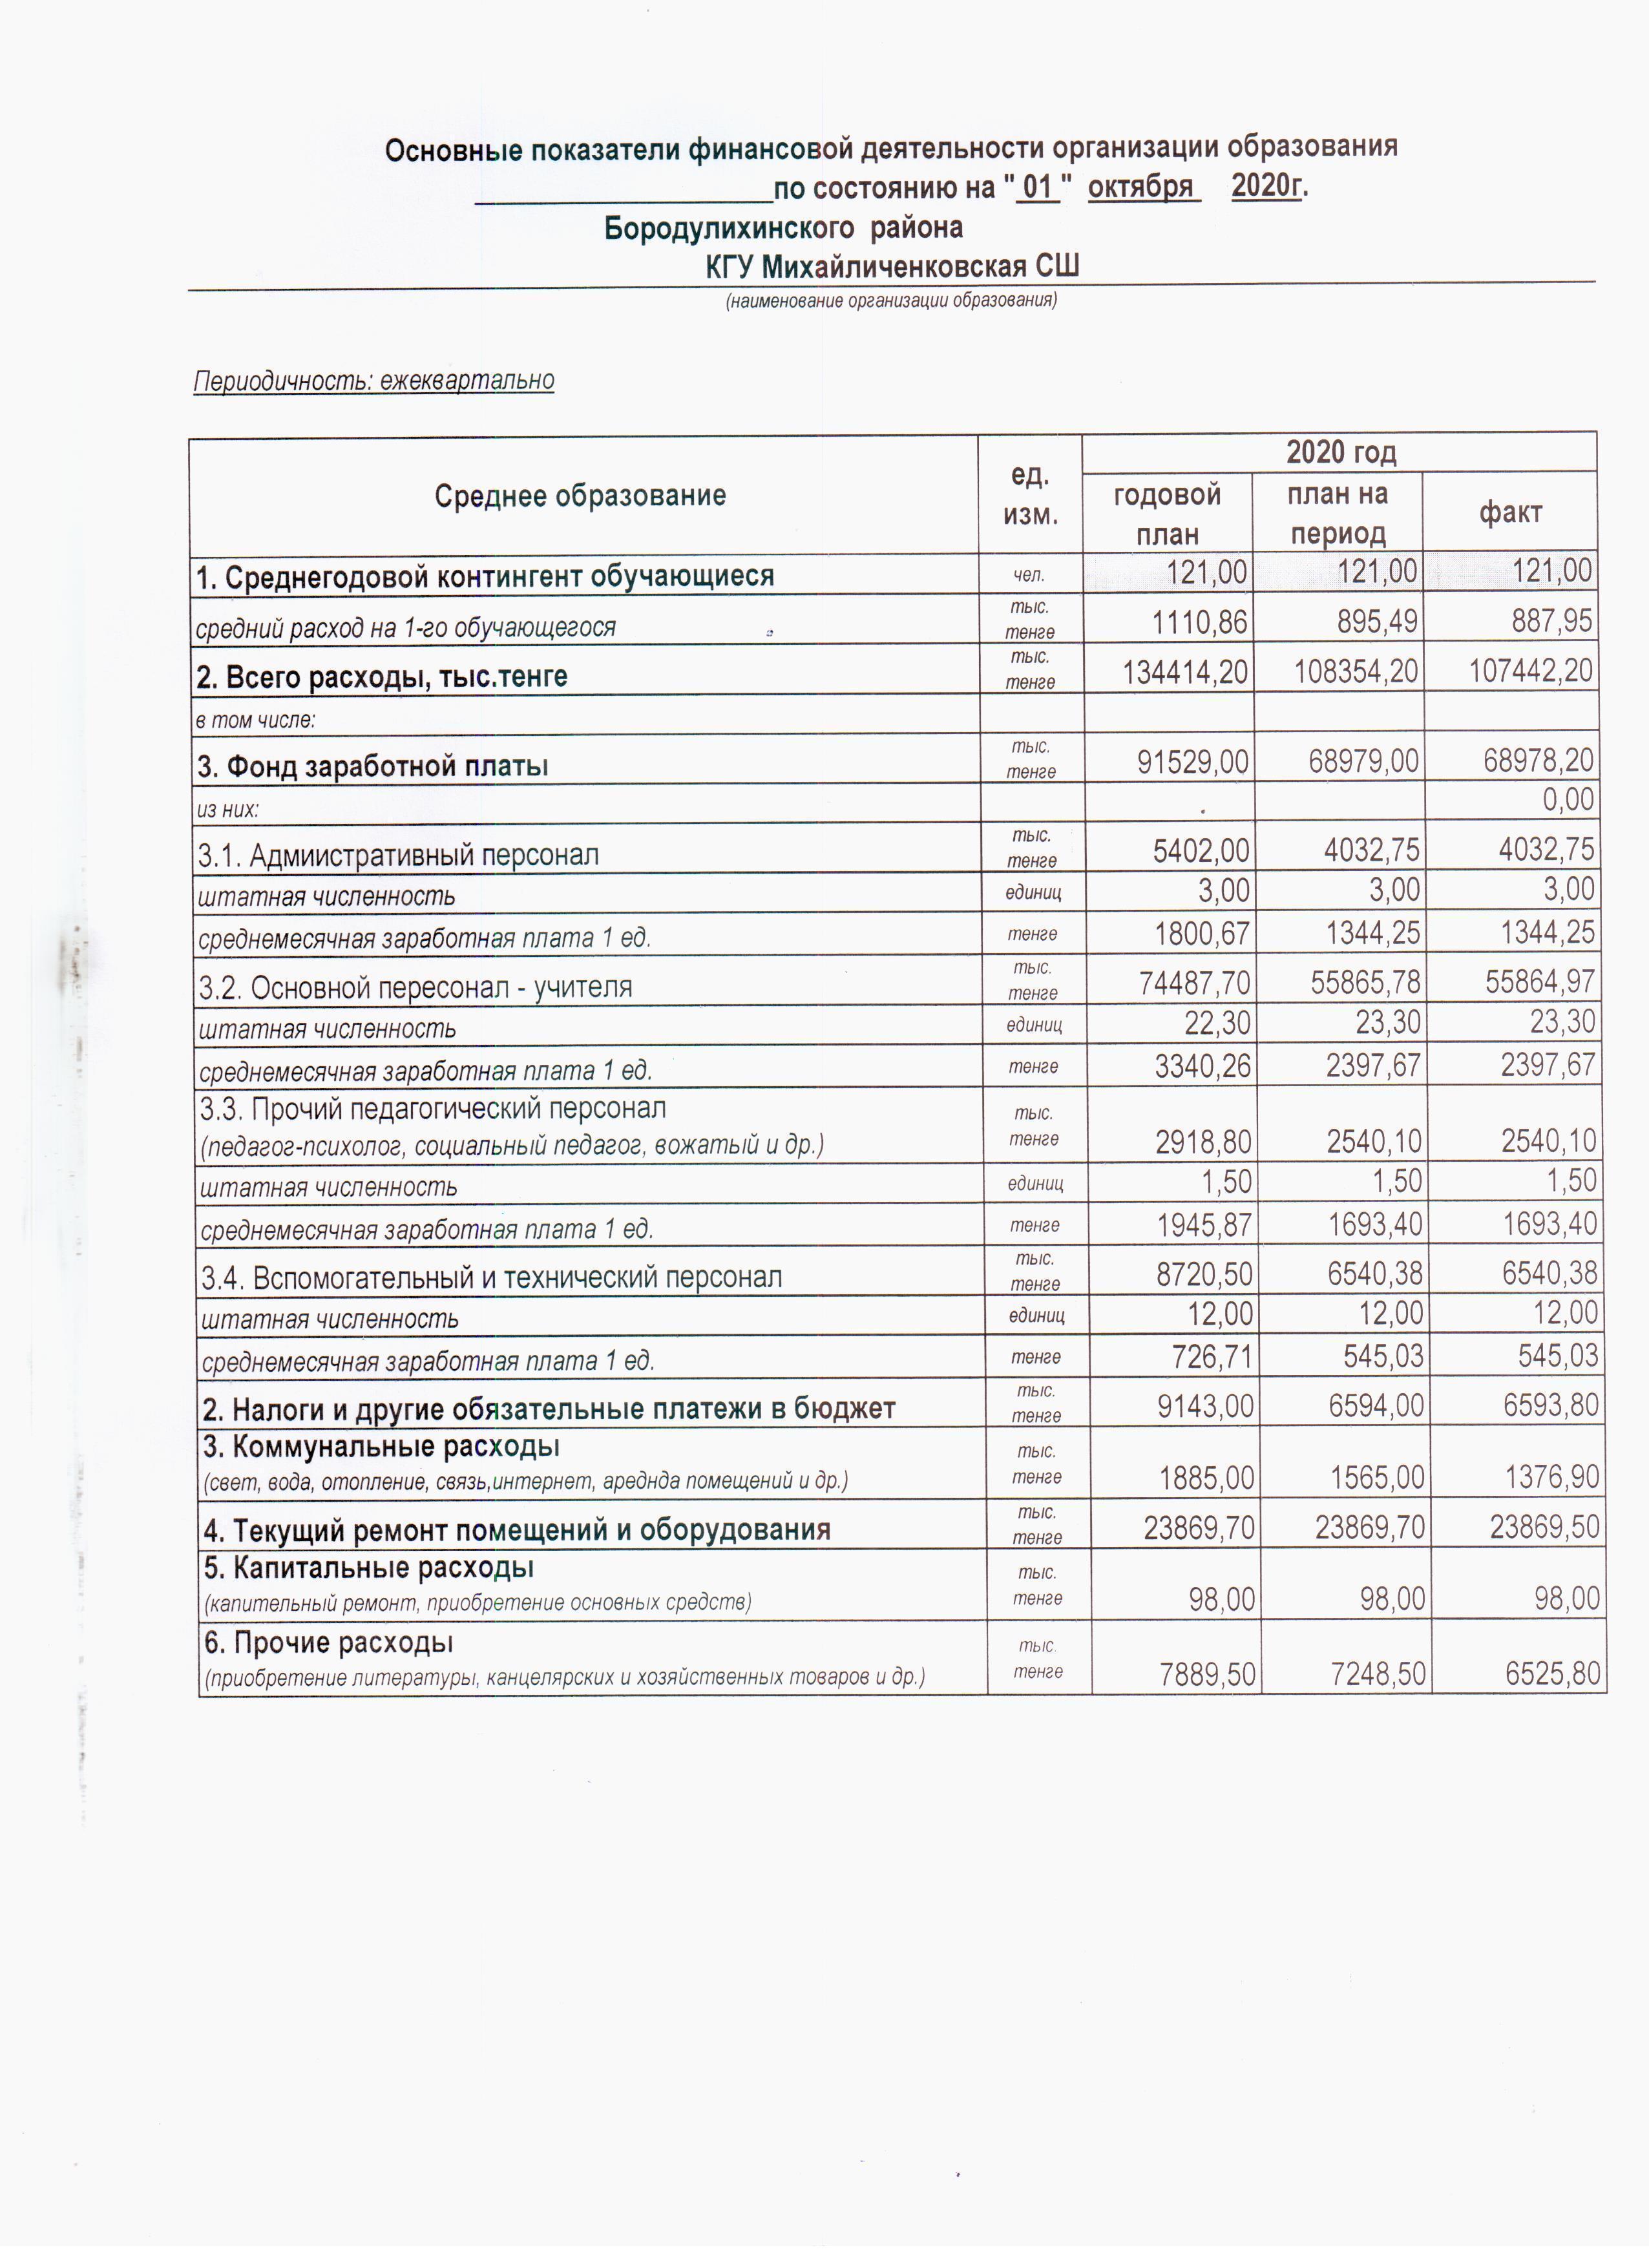 Основные показатели финансовой деятельности организации образования по состоянию на 01.10.2020г.